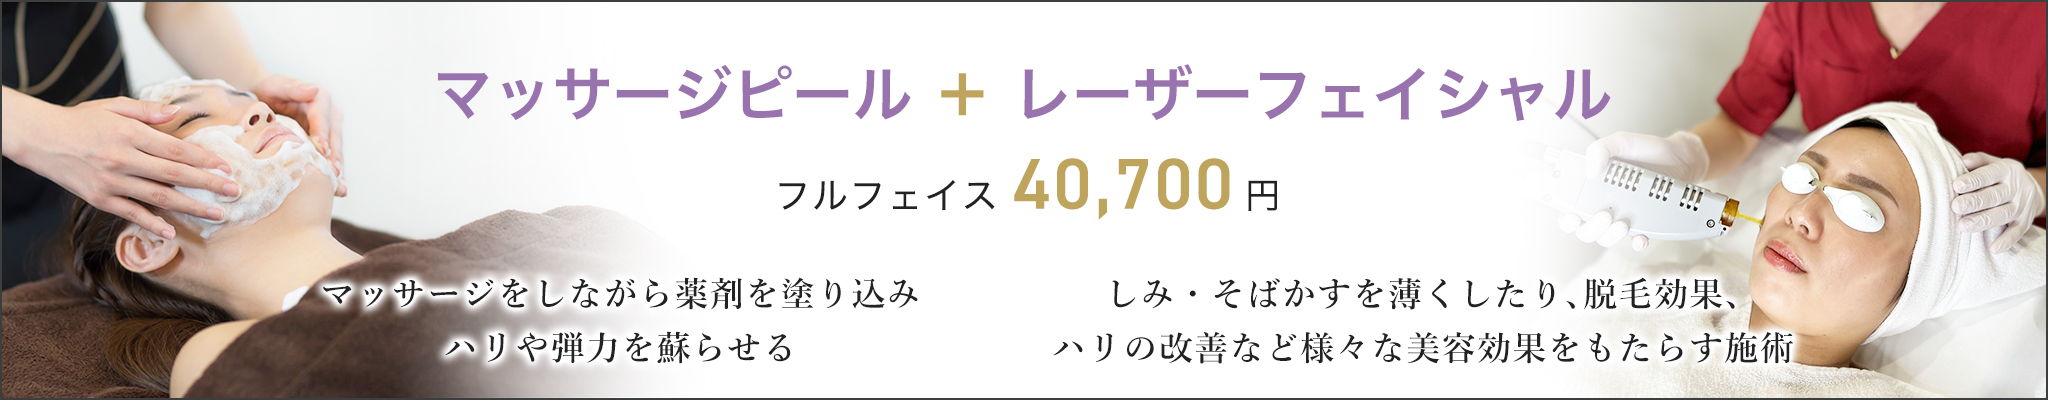 マッサージピール+レーザーフェイシャル フルフェイス40,700円